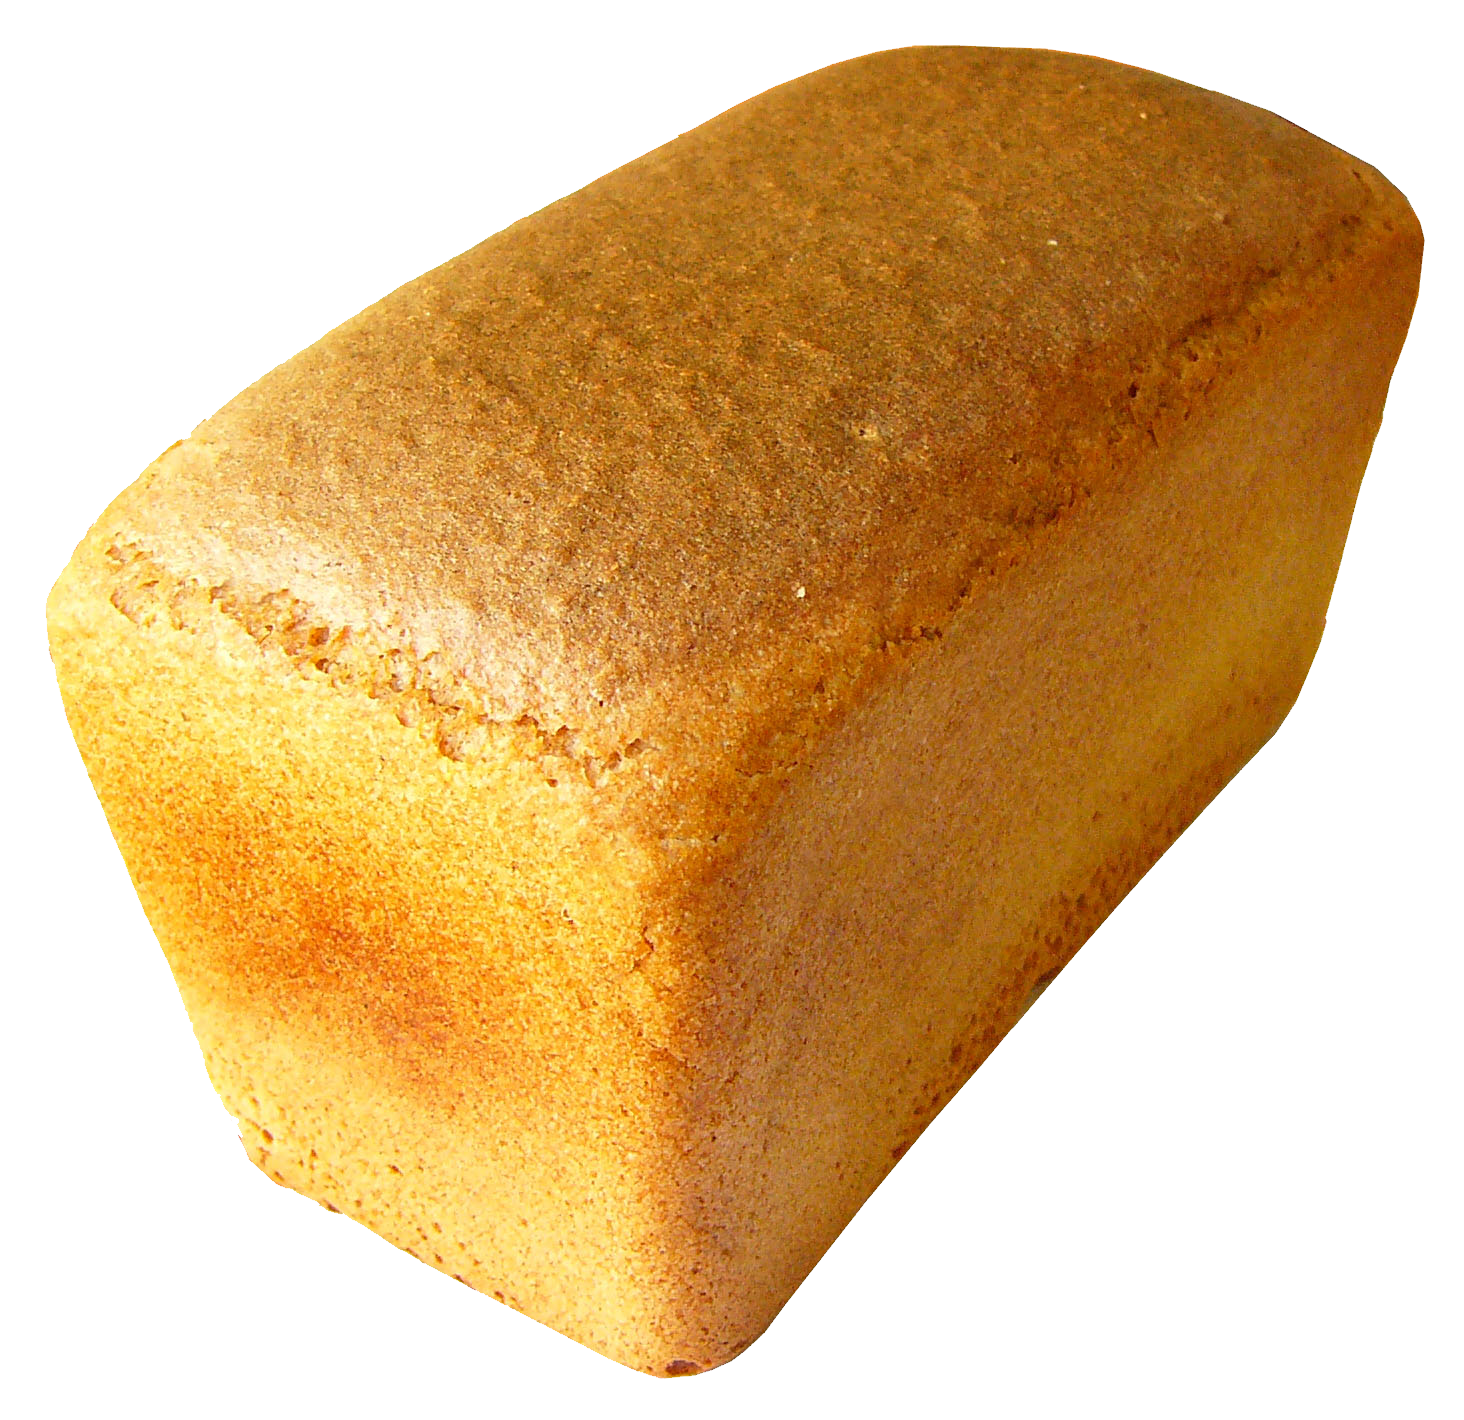 Beyaz ekmek